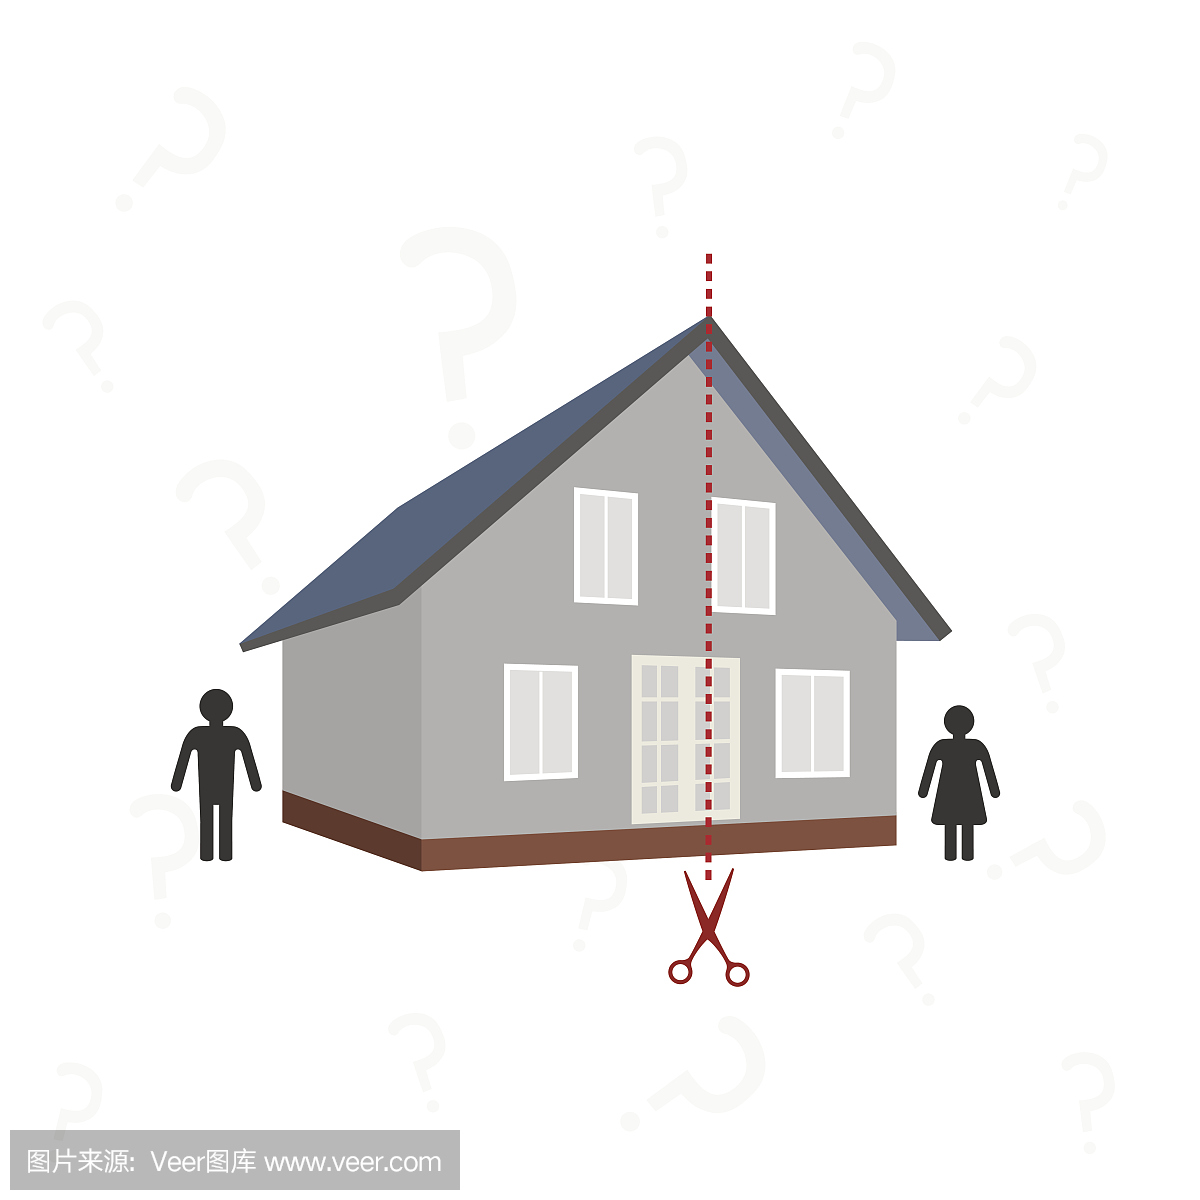 房子和虚线的切割 - 离婚后财产分割的概念